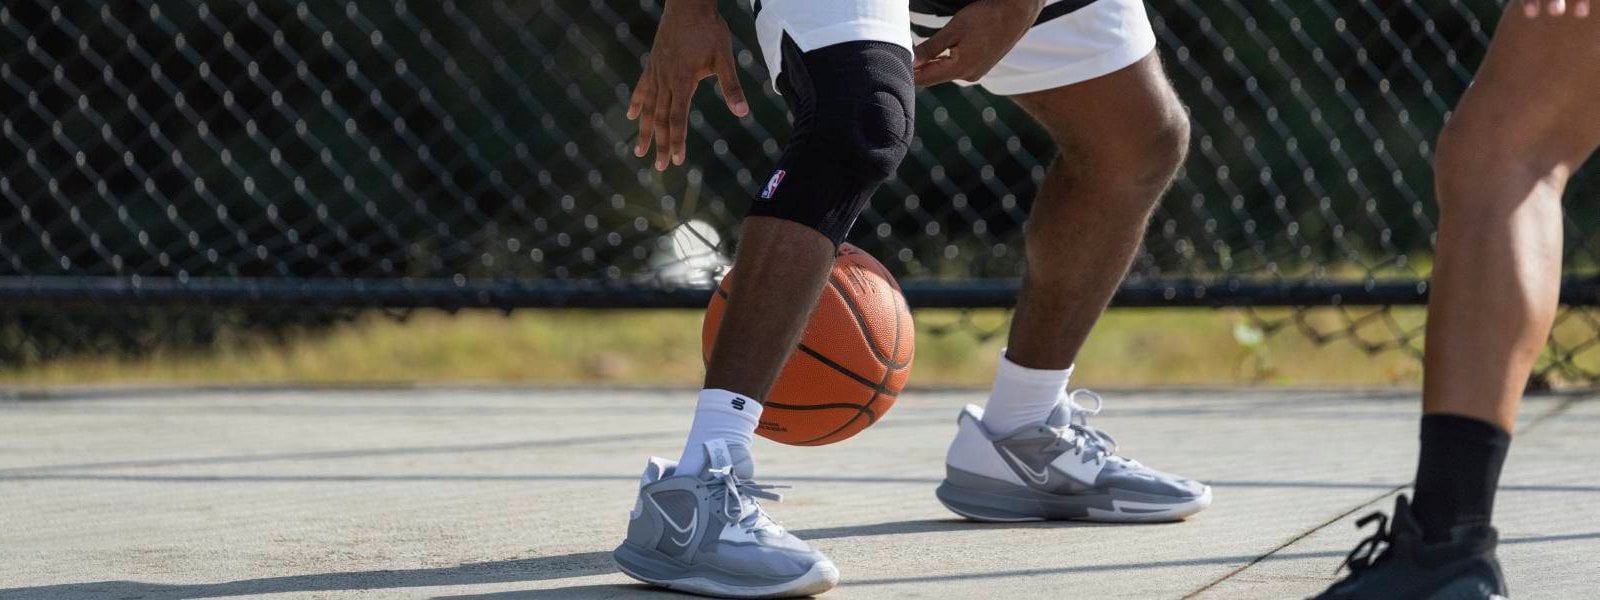 Spieler dribbelt auf einem Streetball-Court mit einem Basketball und trägt dabei eine schwarze NBA Knee Support